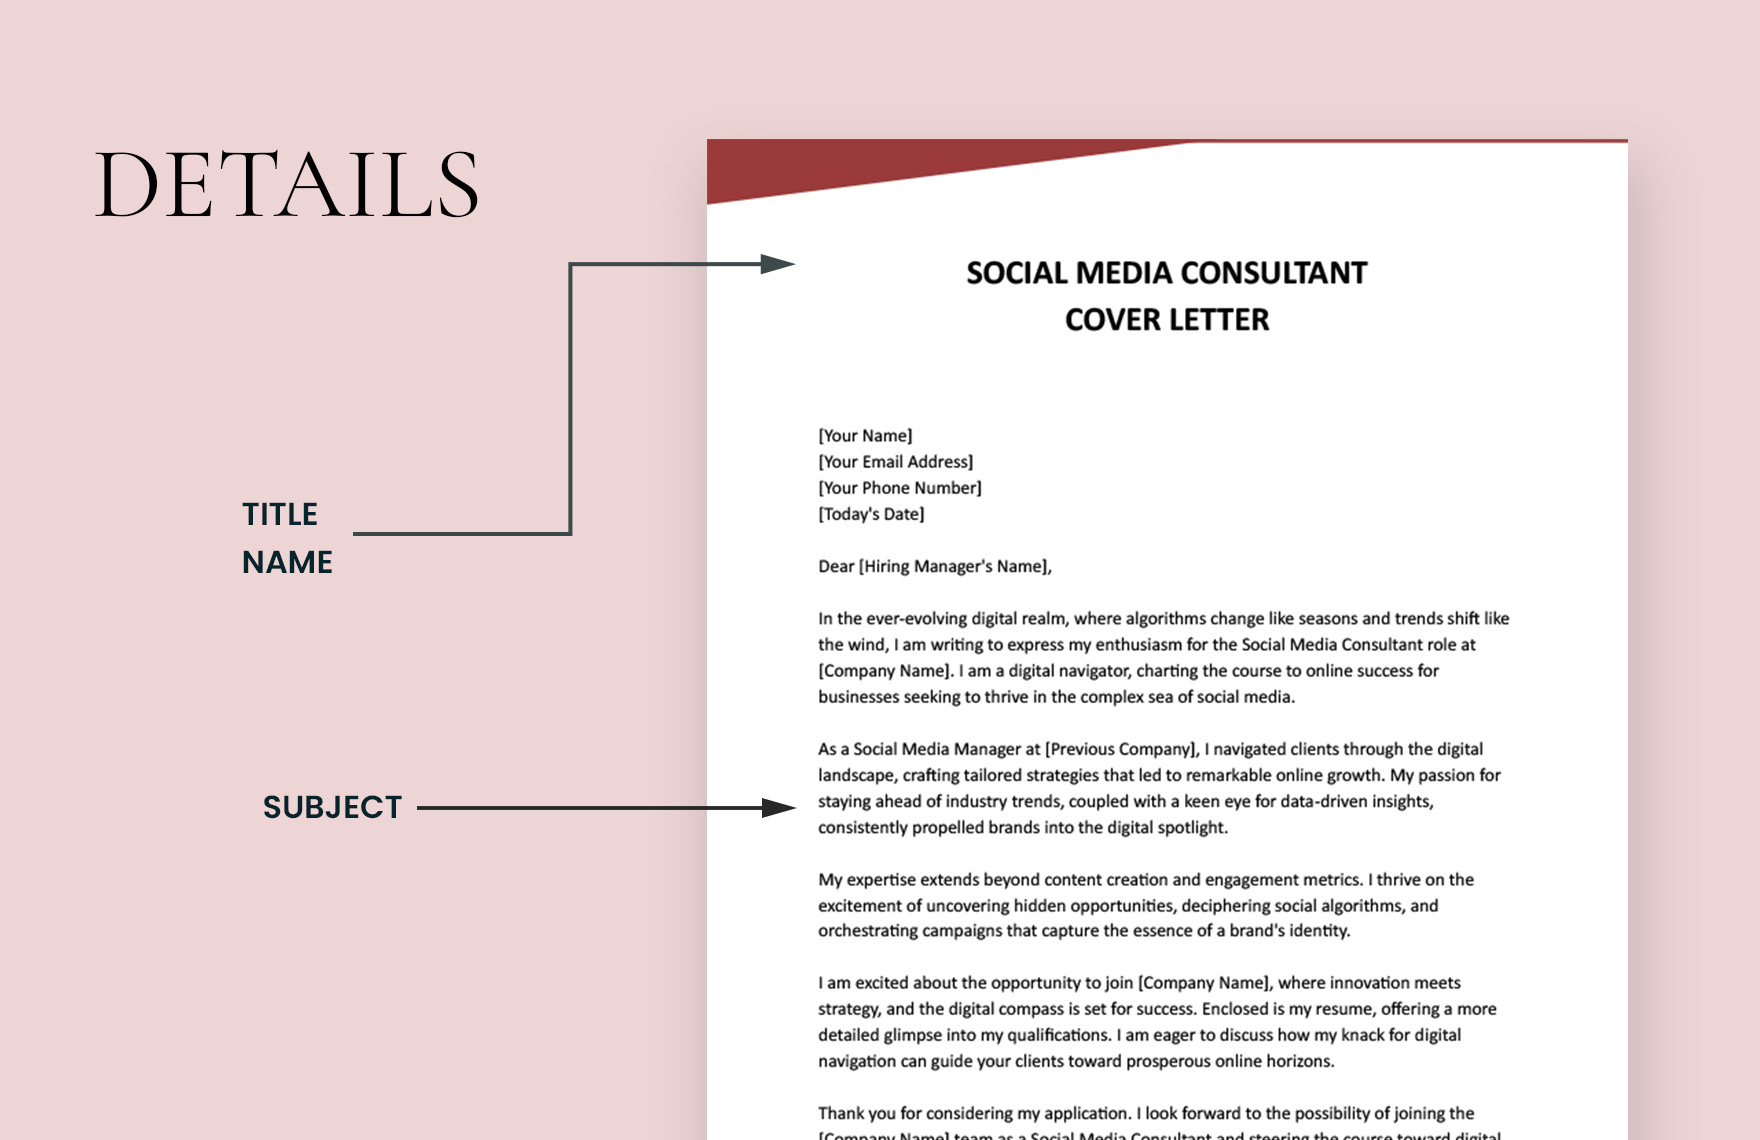 Social Media Consultant Cover Letter